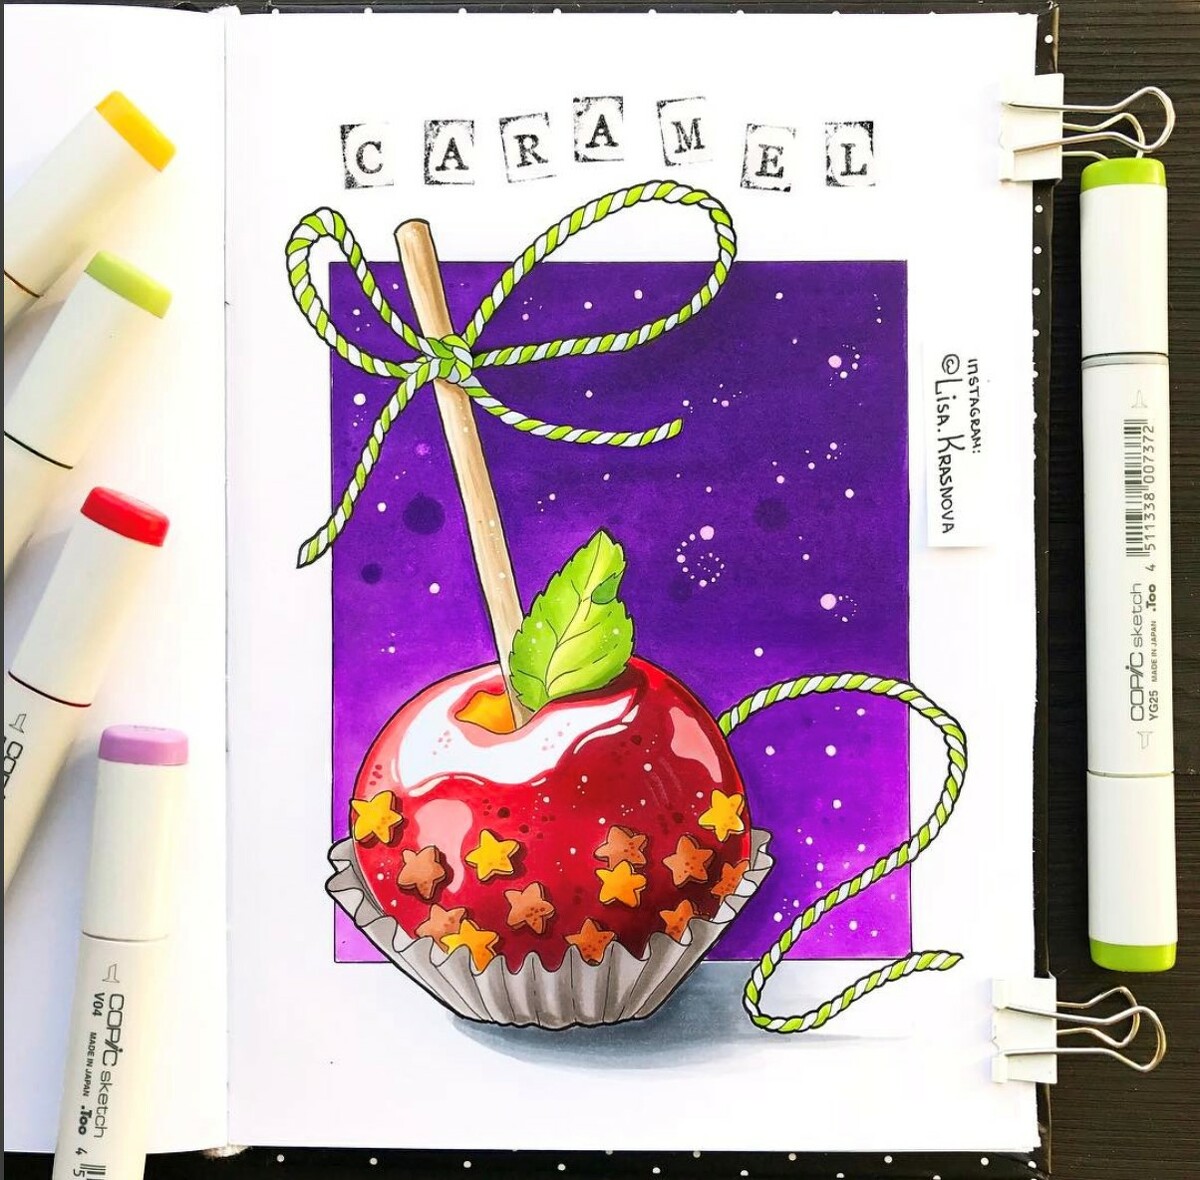 <p>
		Яблоко в карамели от Лизы Красновой. Плавные переходы цвета и безупречная лепка формы бликами создают атмосферу сказочной сладости.	</p>